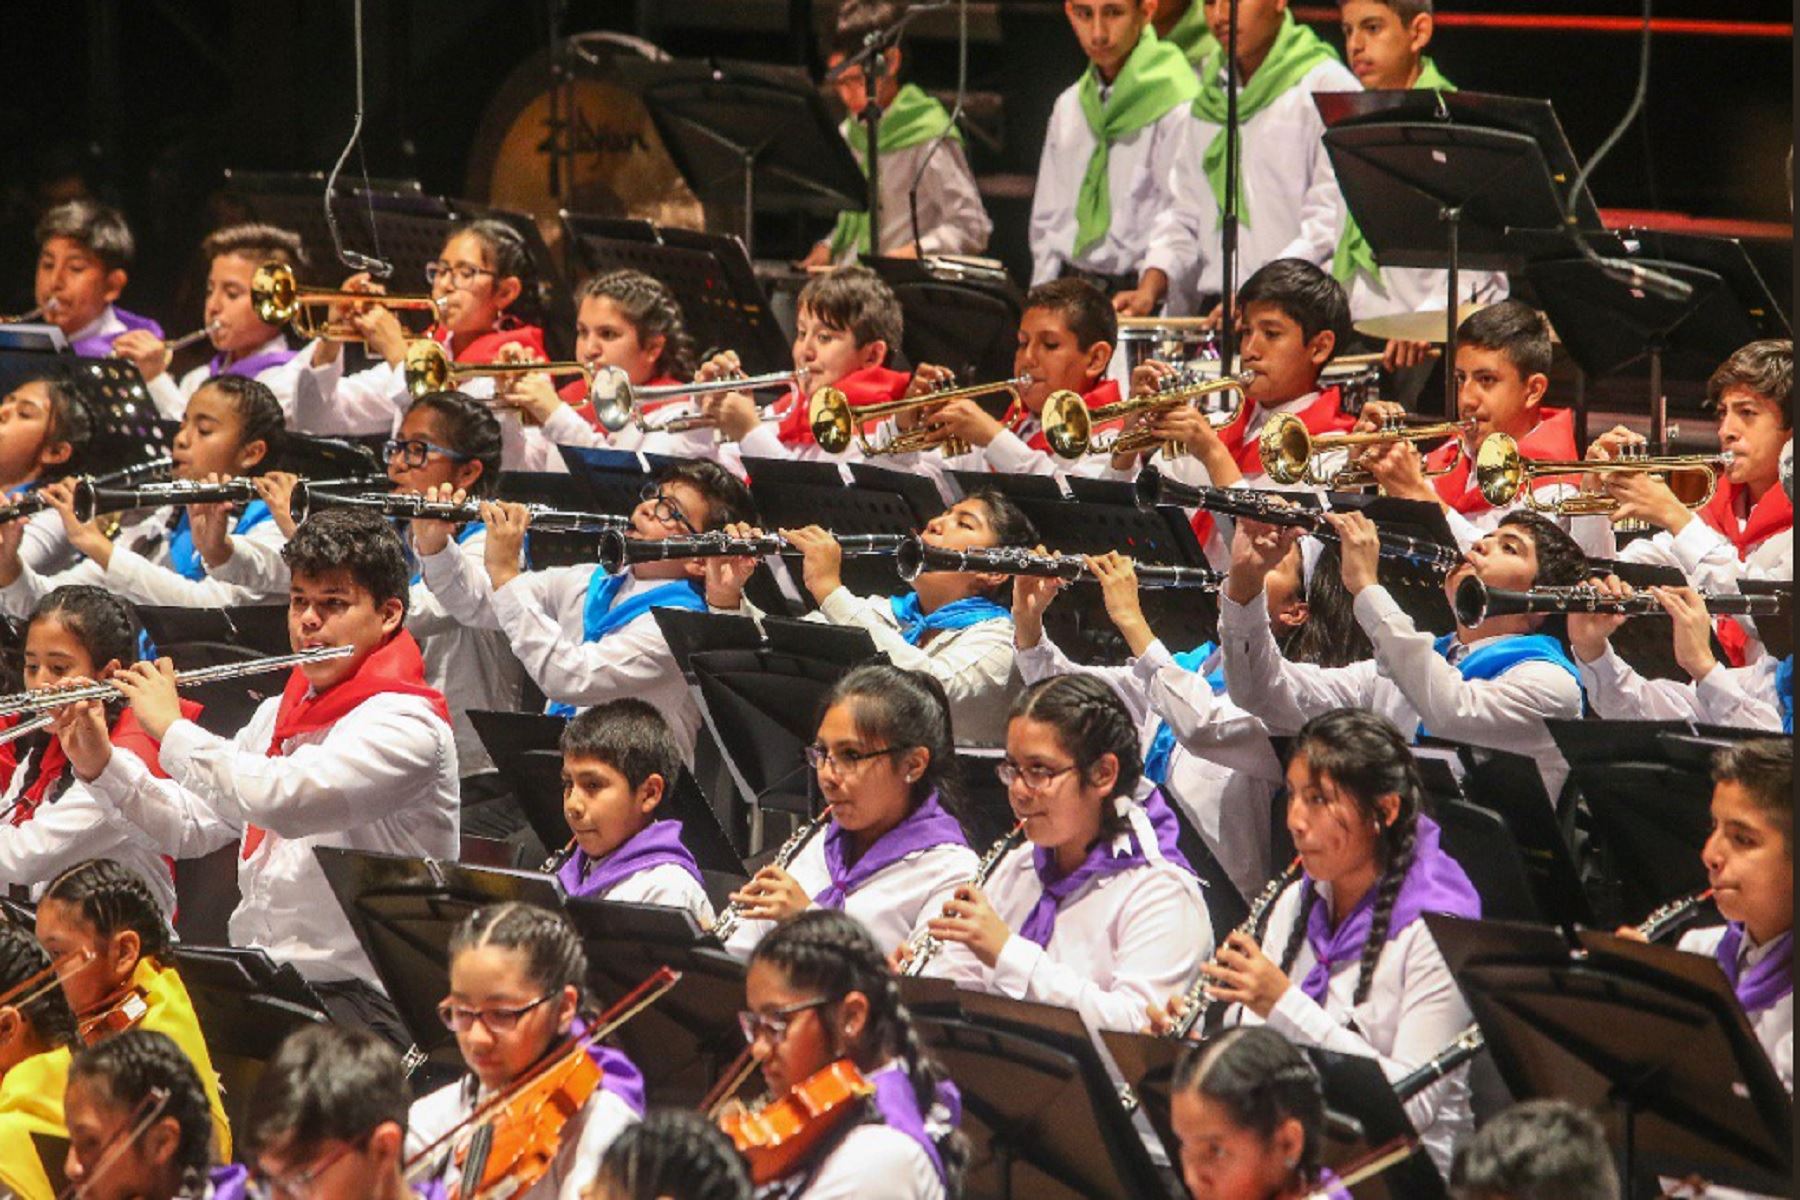 Sinfonía por el Perú